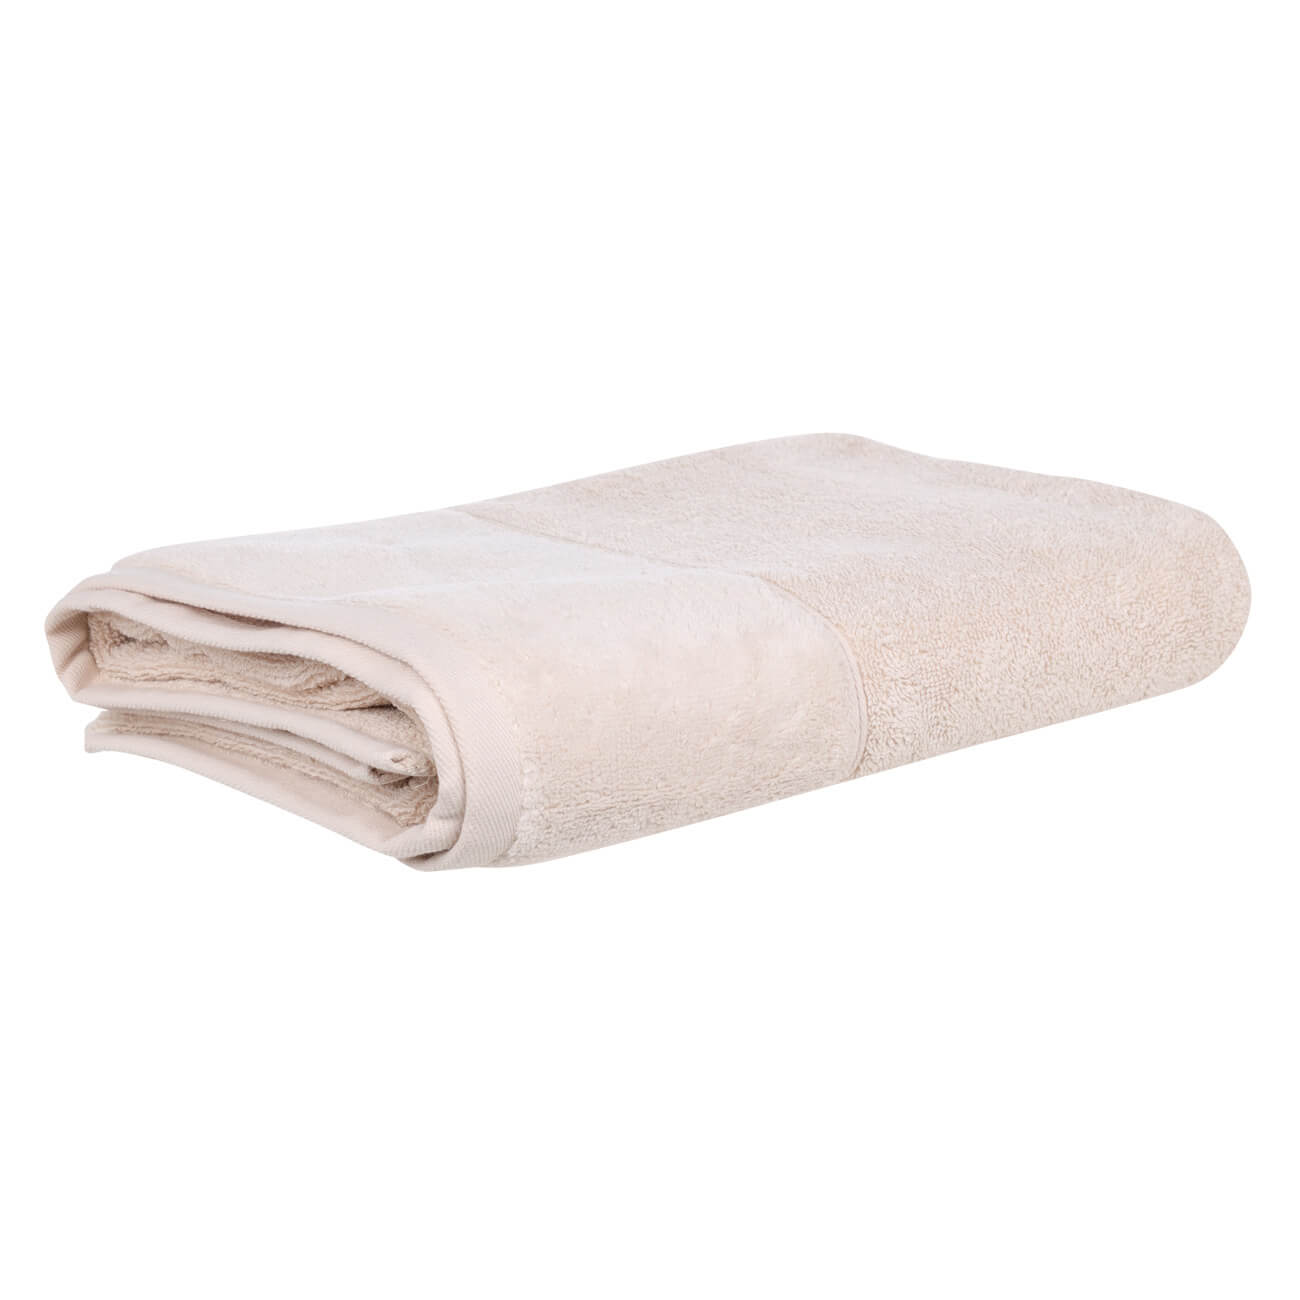 Полотенце, 70х140 см, хлопок, бежевое, Velvet touch полотенце eumenia 50x100 см бежевое